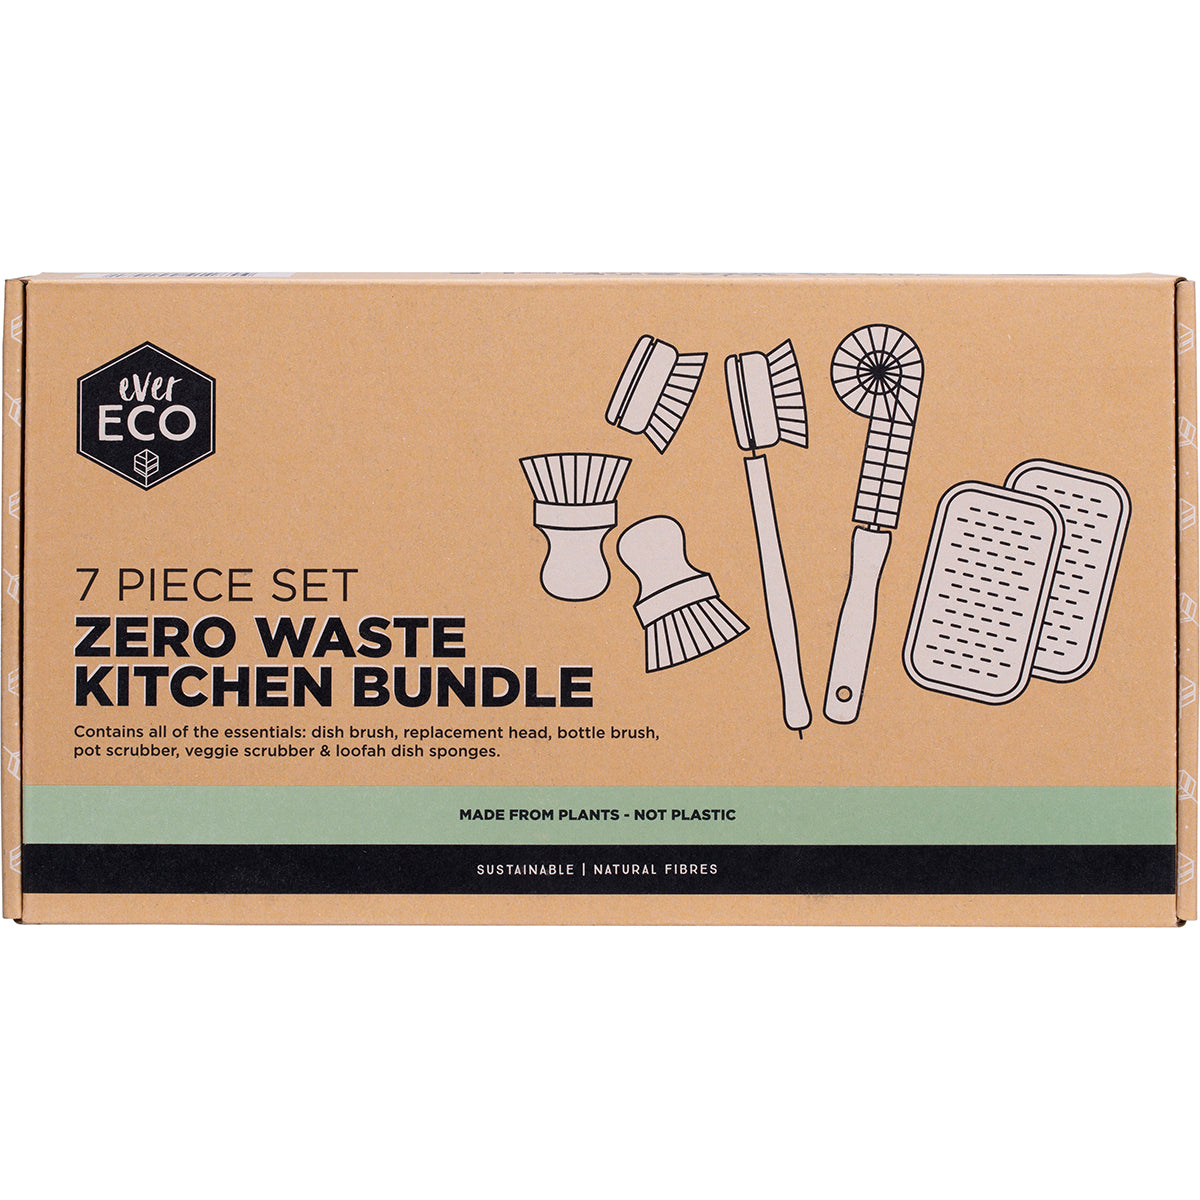 Ever Eco - Zero Waste Kitchen Bundle (7 piece)